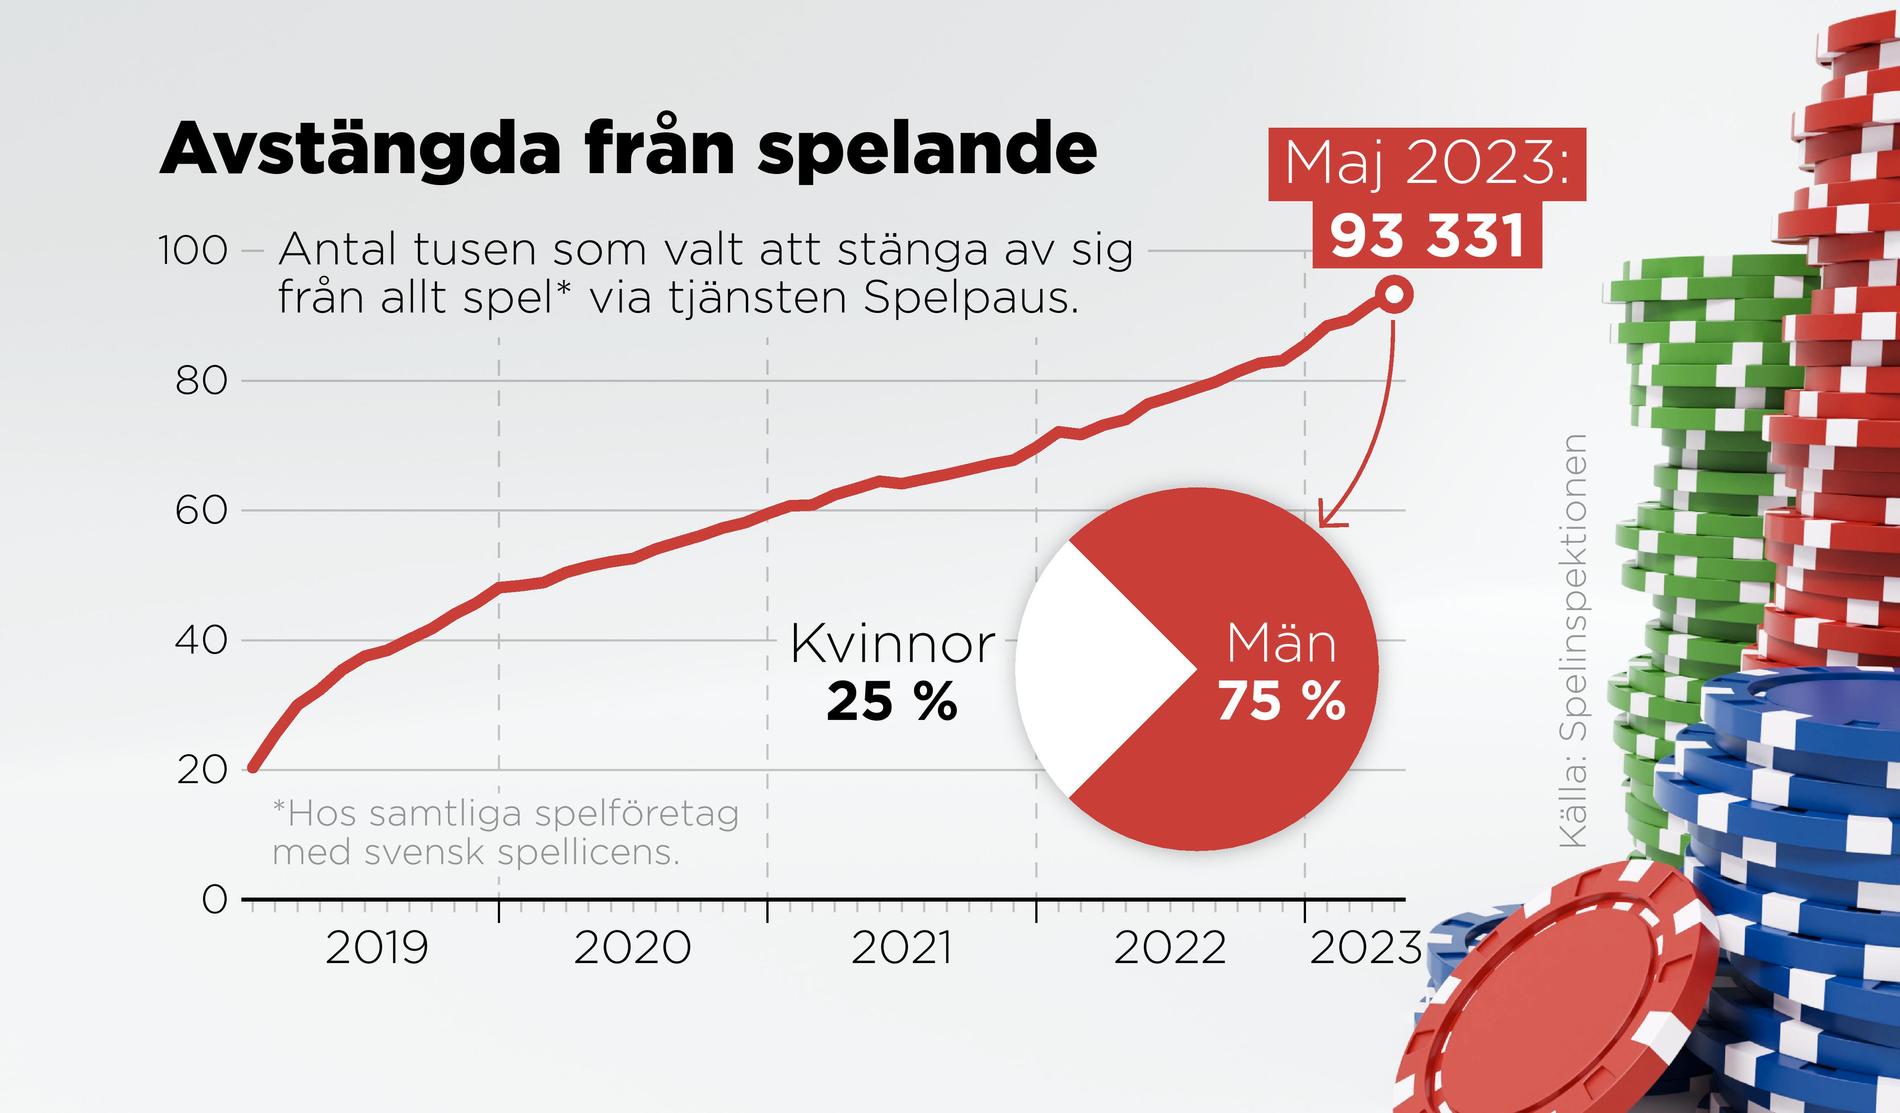 Antal tusen som valt att stänga av sig från allt spelande via tjänsten Spelpaus, 2019-2023.